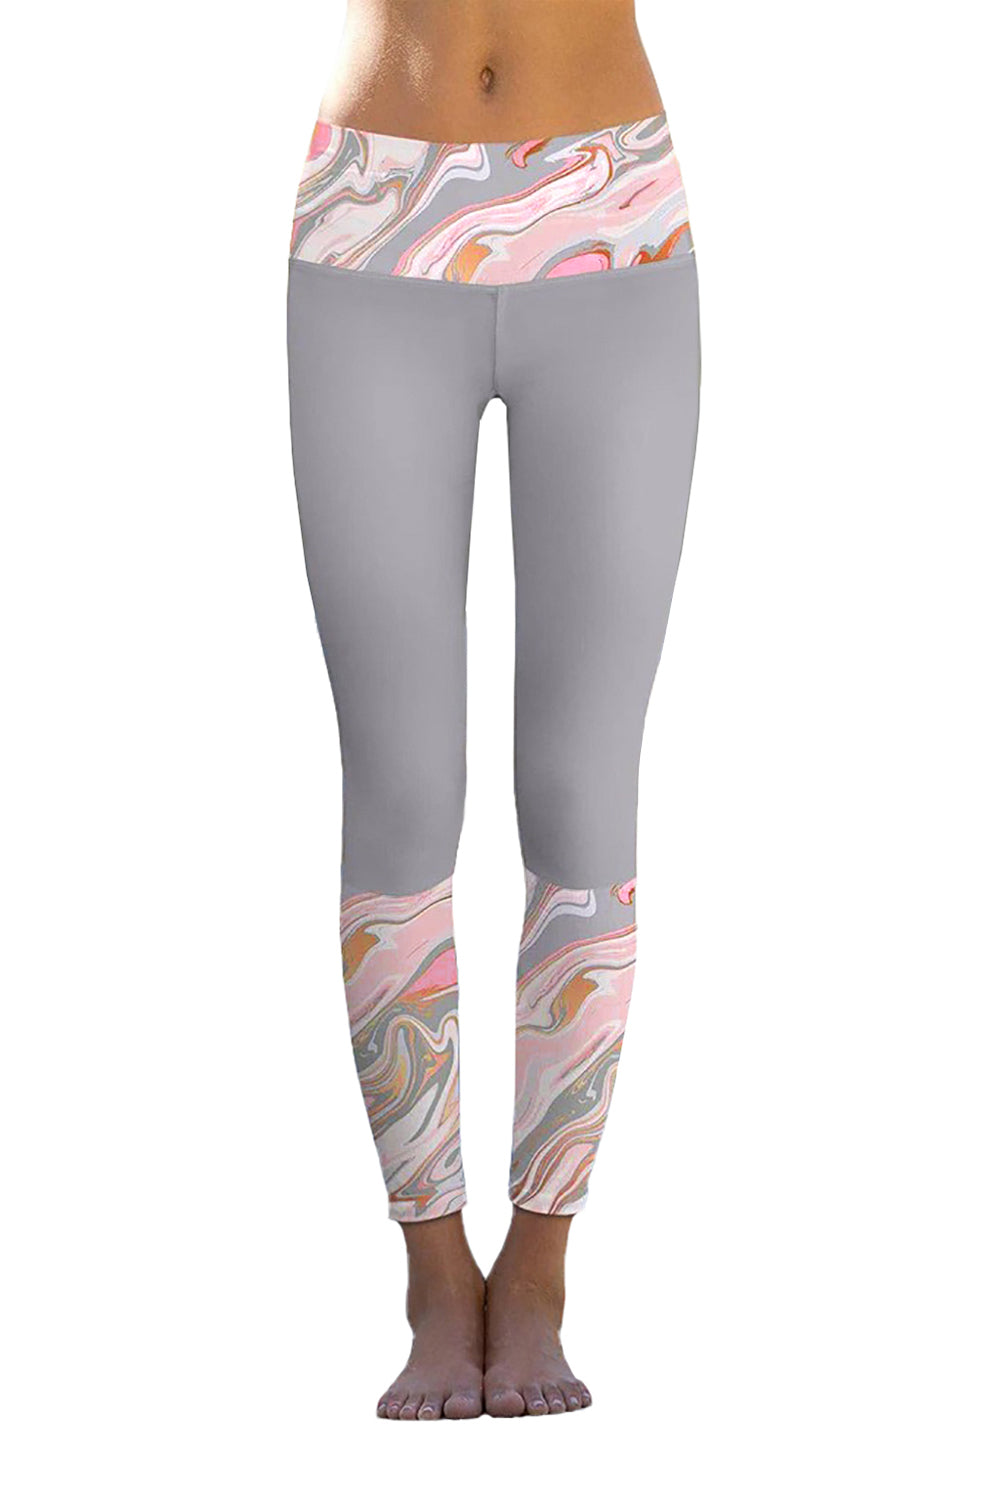 Floral Printed Details Leggings Yoga Pants